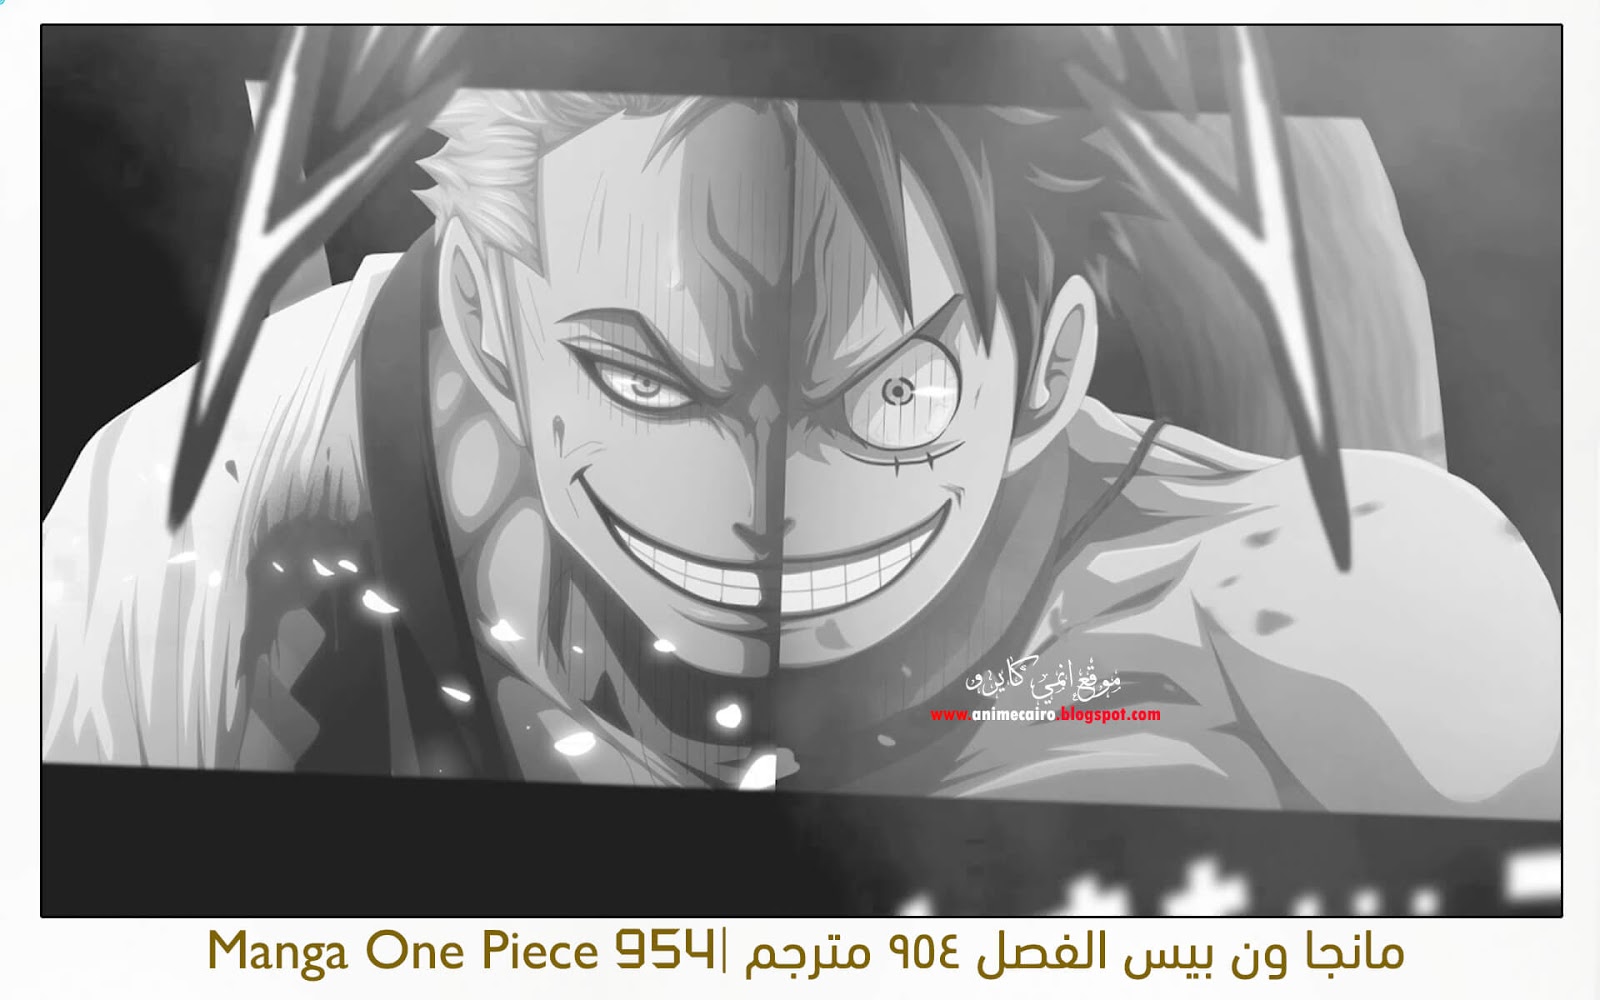 مانجا ون بيس الفصل 954 مترجم Manga One Piece 954